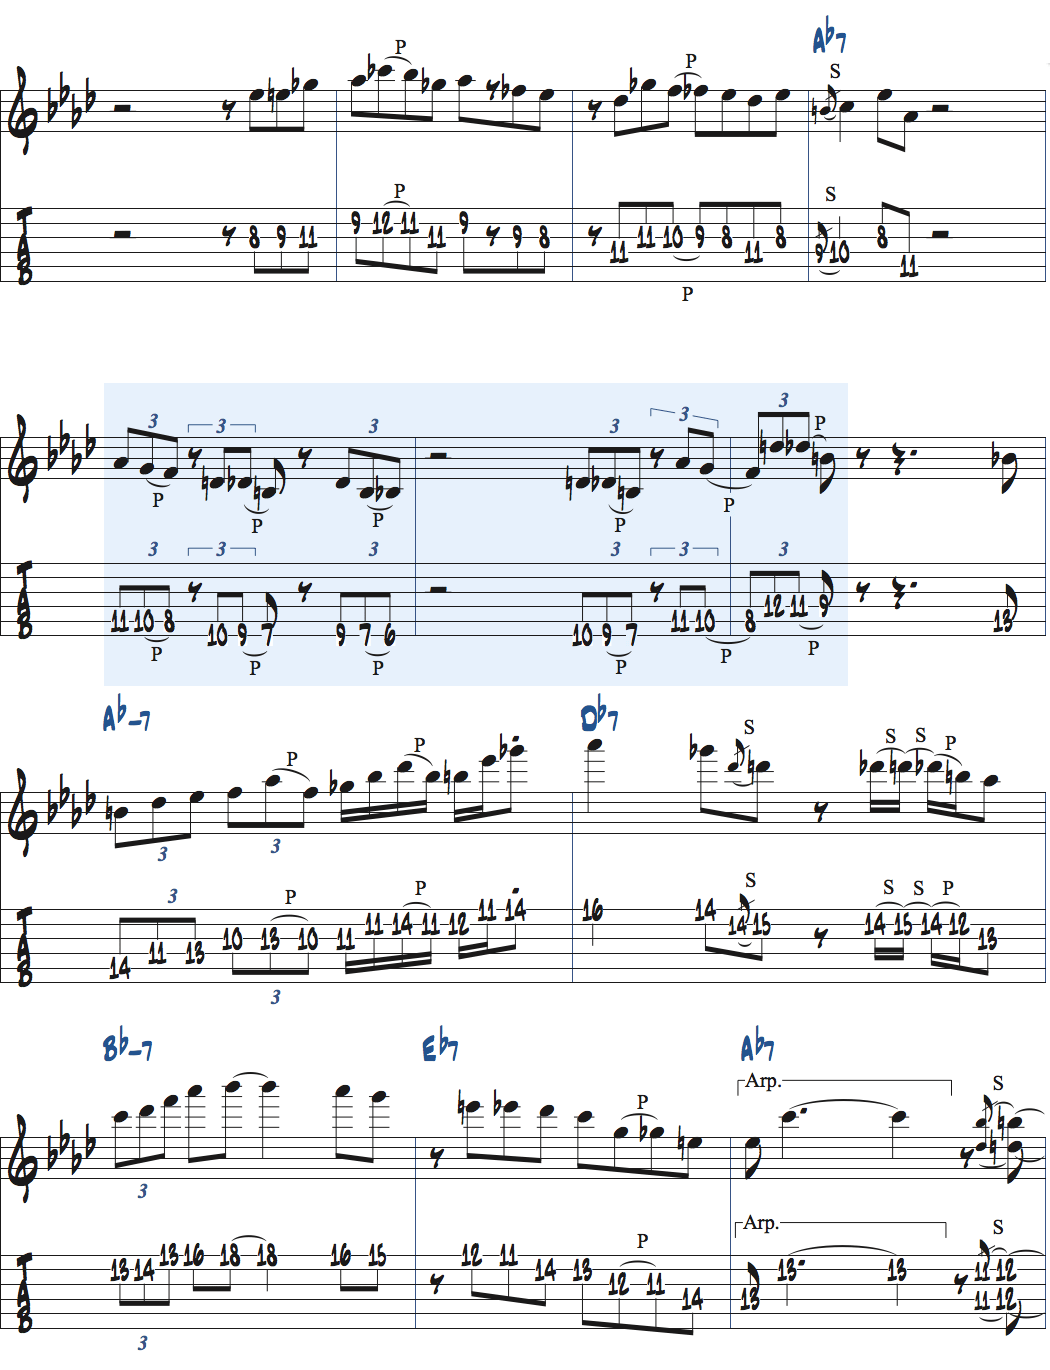 ディミニッシュスケールを使ったアドリブ例楽譜ページ2